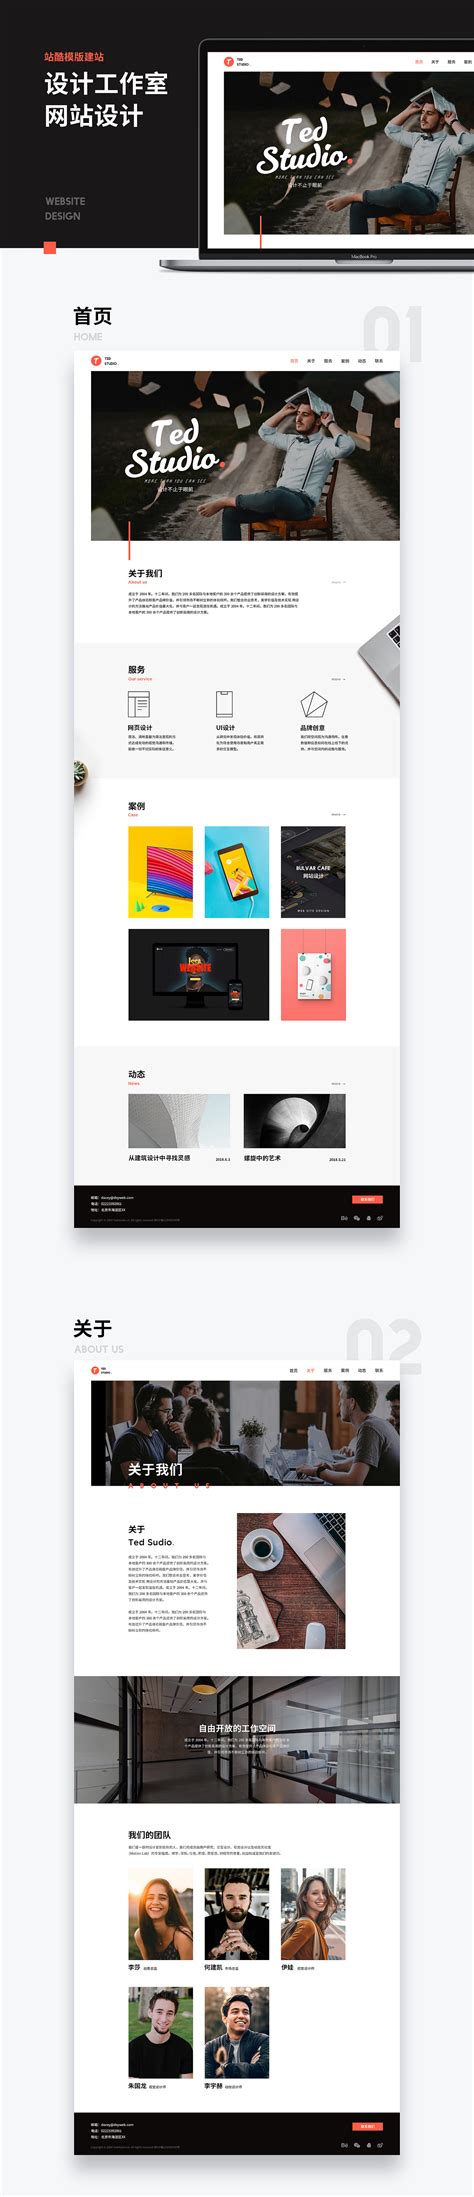 襄阳网站设计工作室